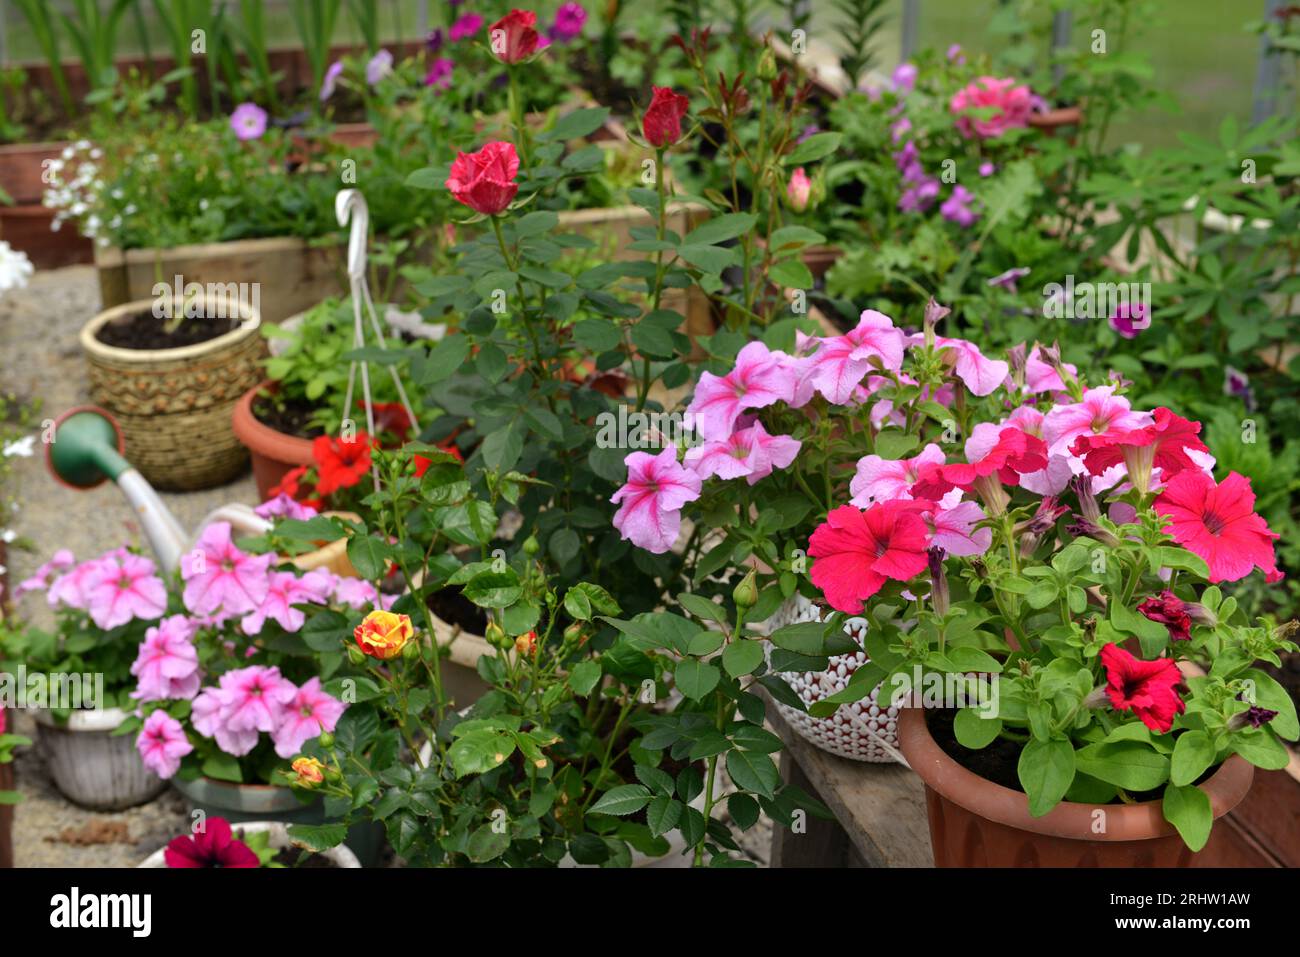 Schöne Blumen aus rosa und flieder Petuia im Gewächshaus. Vintage-Garten und Pflanzobjekte, botanisches Stillleben mit Sommer- und Frühlingspflanzen Stockfoto